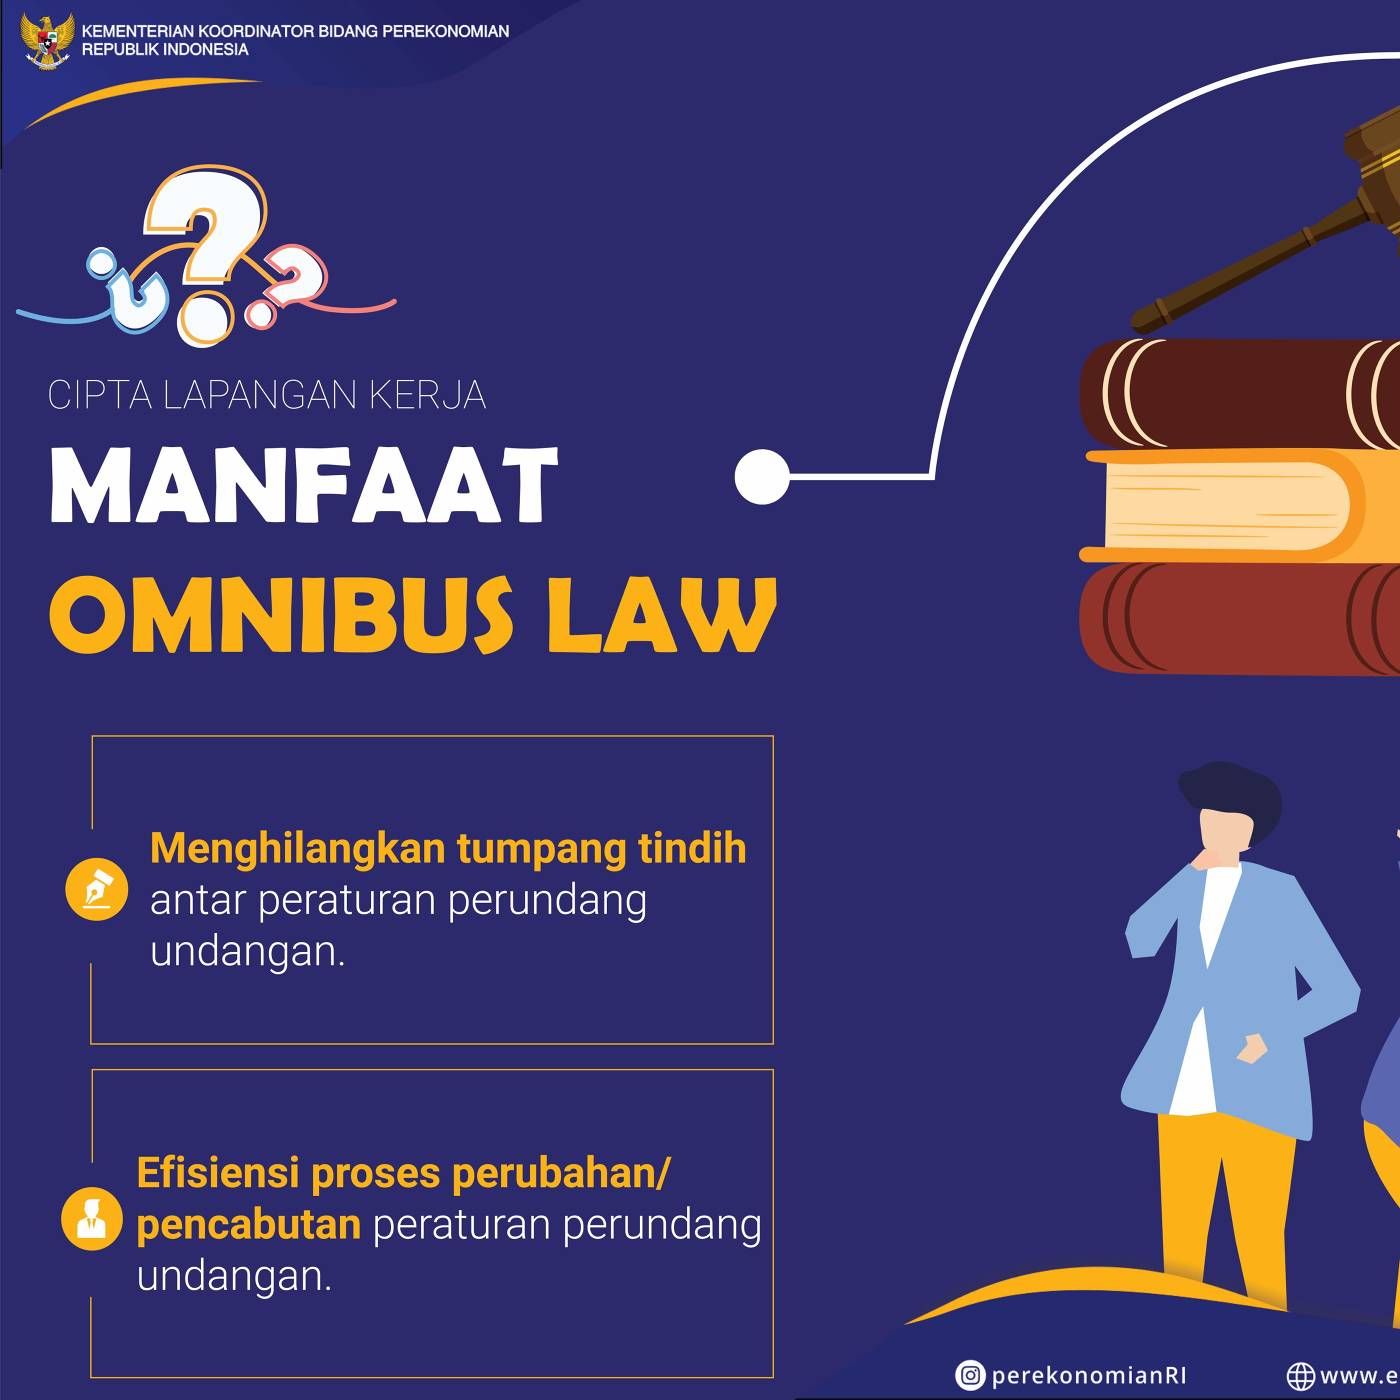 UU Omnibus Law: Upaya Perkuat Perekonomian Nasional melalui Penciptaan Lapangan Kerja dan Fasilitas Perpajakan